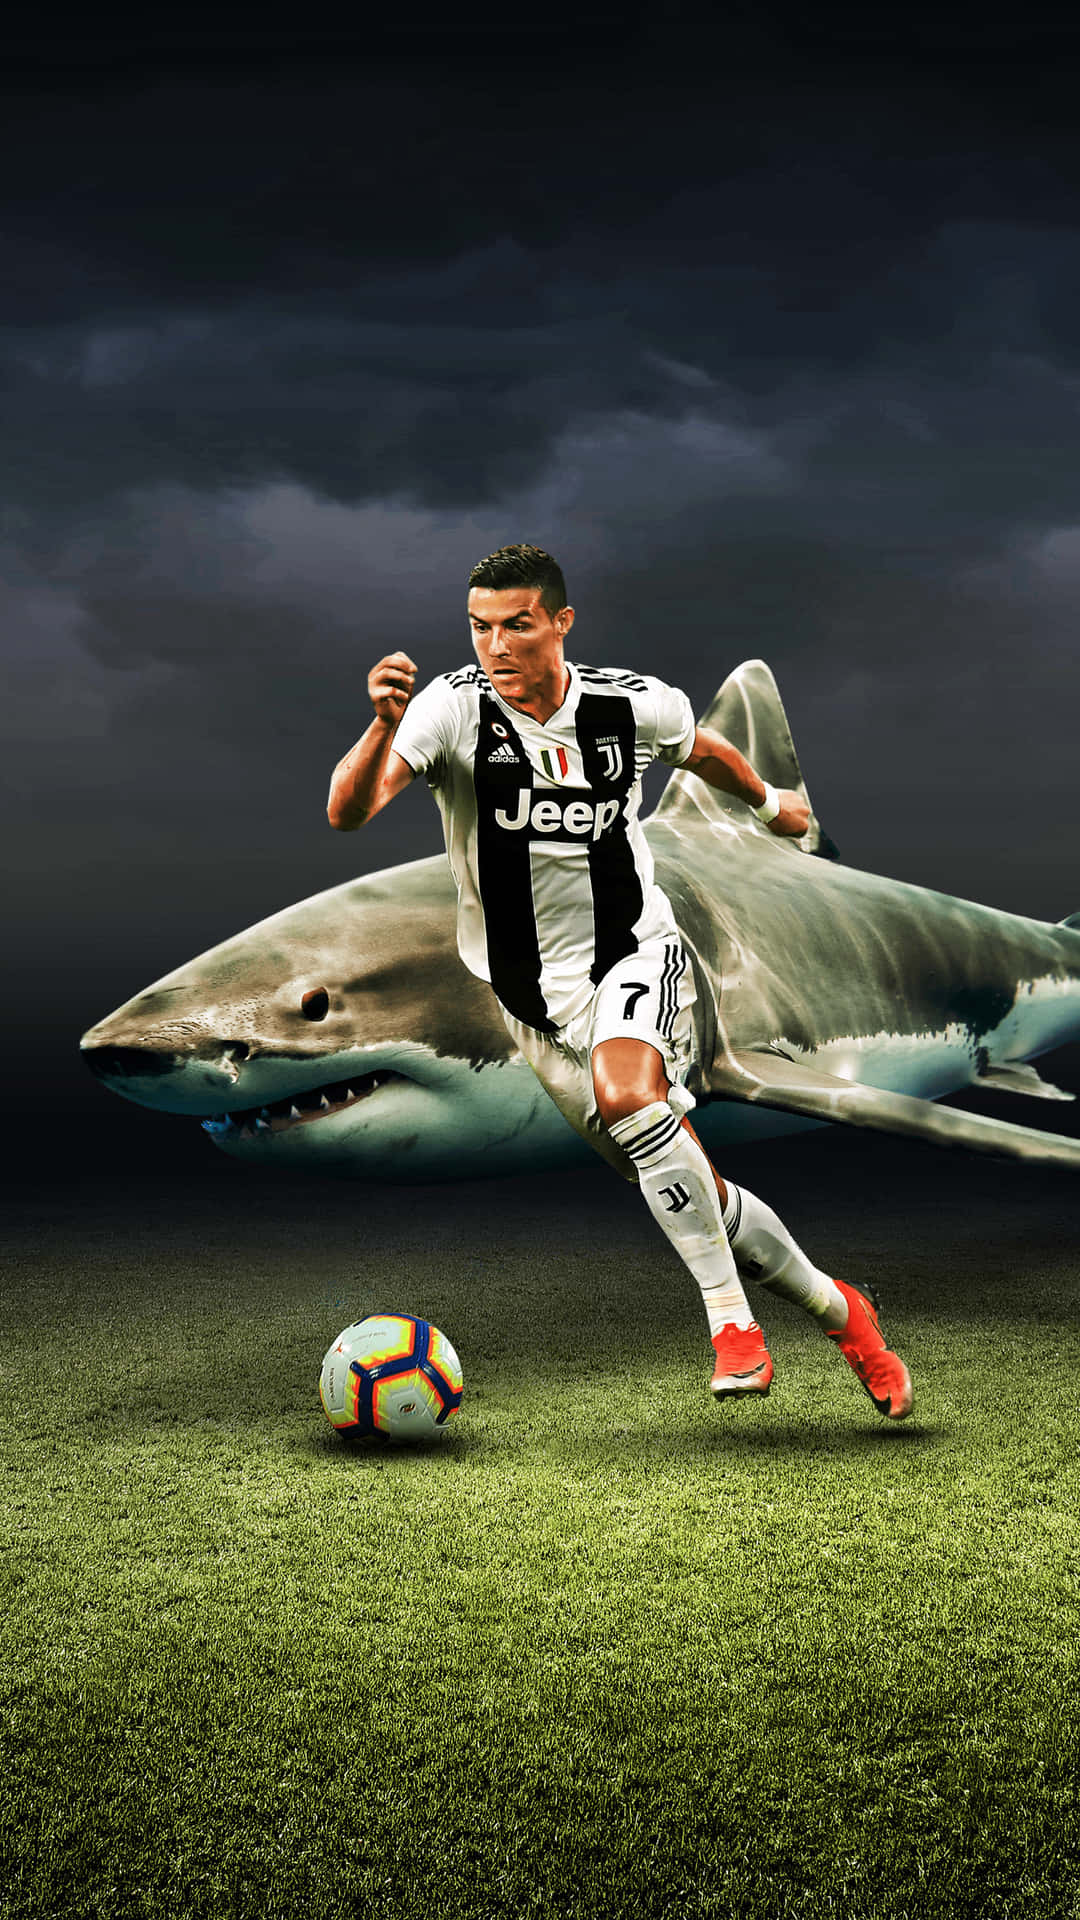 Imagende Cristiano Ronaldo A Punto De Disparar En Un Partido De Fútbol Fondo de pantalla